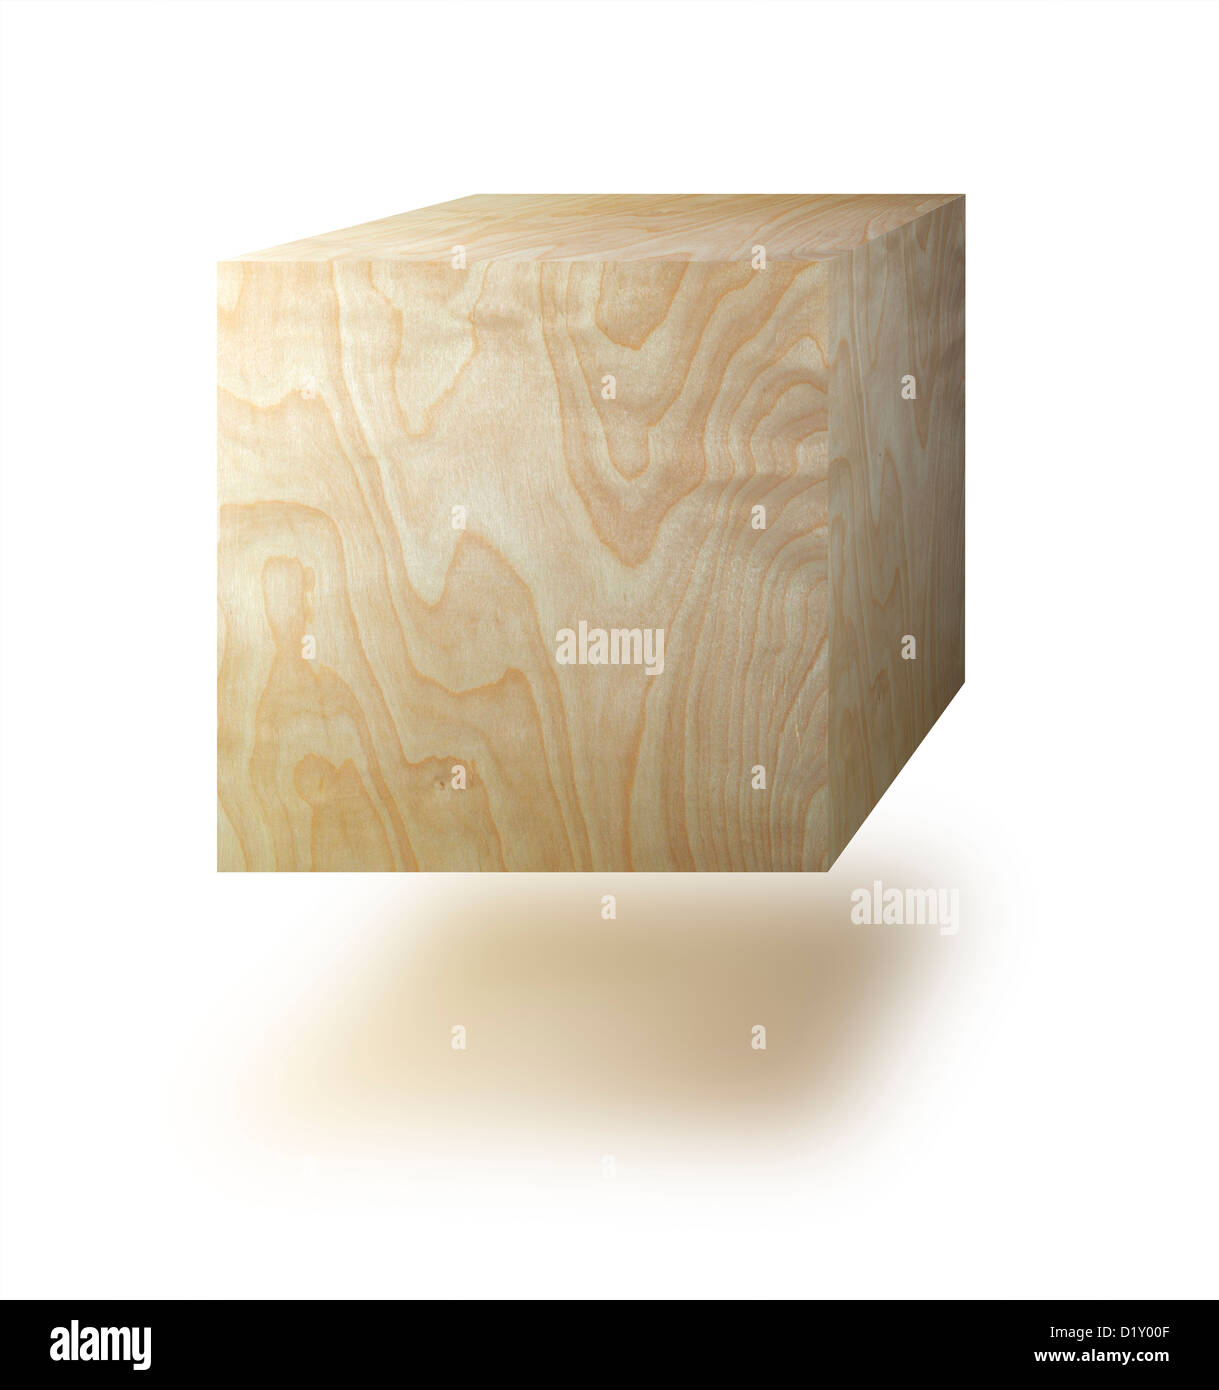 Cubo di legno contro uno sfondo bianco Foto Stock